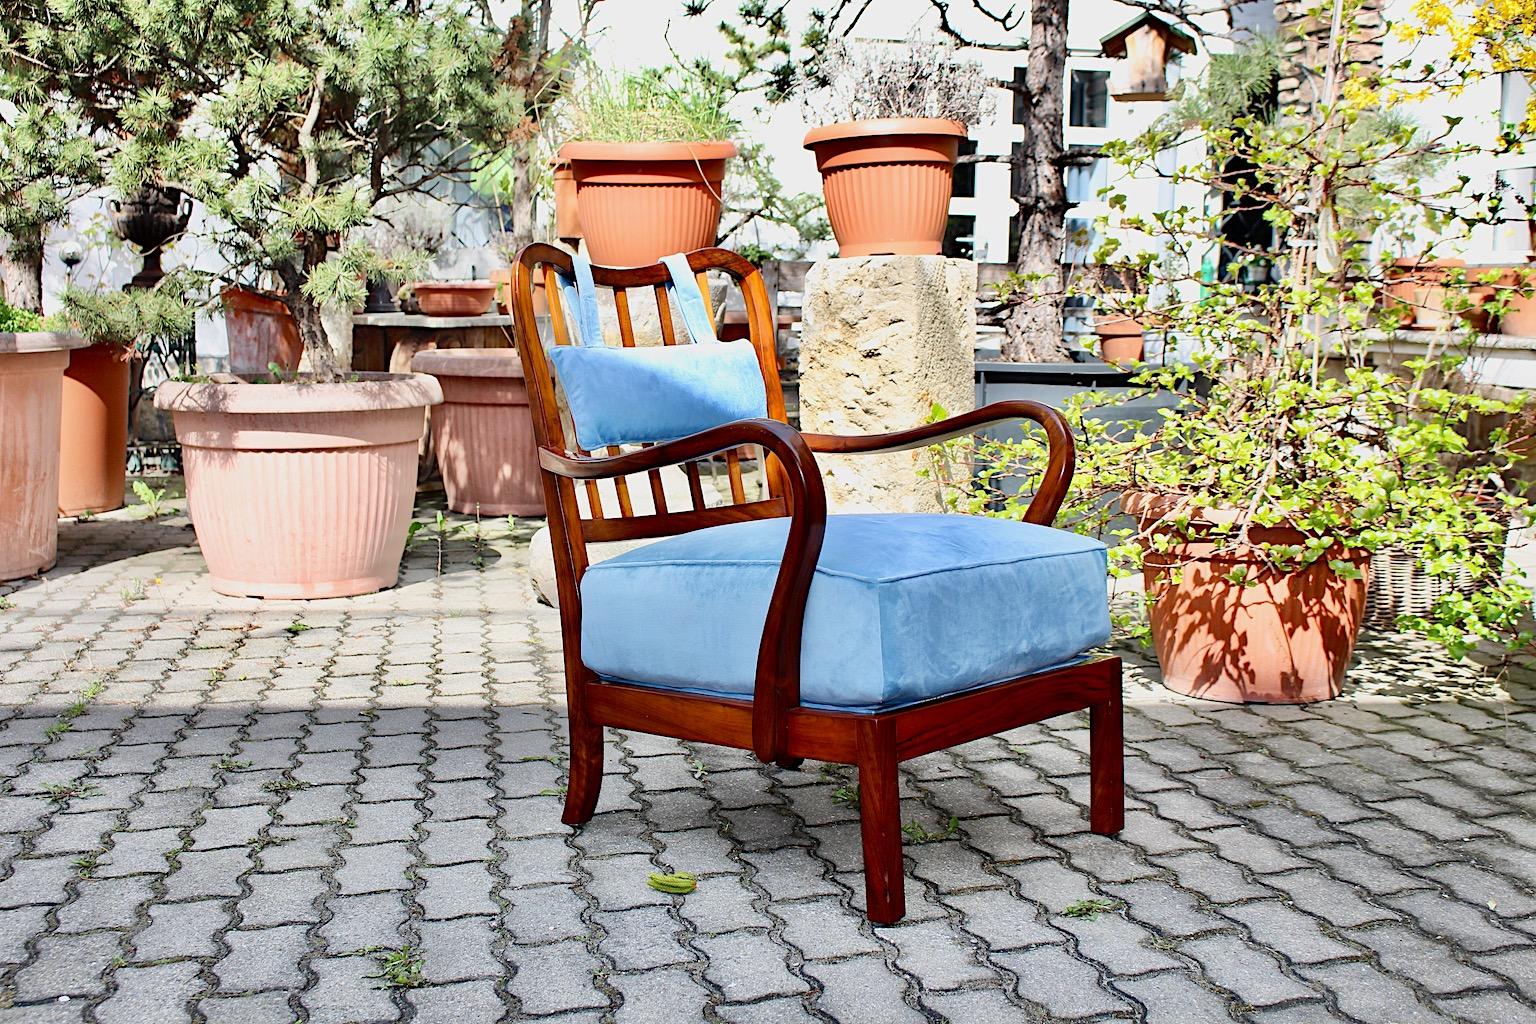 Art Deco Vintage Lounge Chair oder Sessel aus Nussbaum entworfen und ausgeführt Wien 1930er Jahren zugeschrieben Oswald Haerdtl.
Wiener Wohnmöbel, die in der Zwischenkriegszeit entworfen wurden, waren für ihre gemütliche und komfortable Ausstrahlung